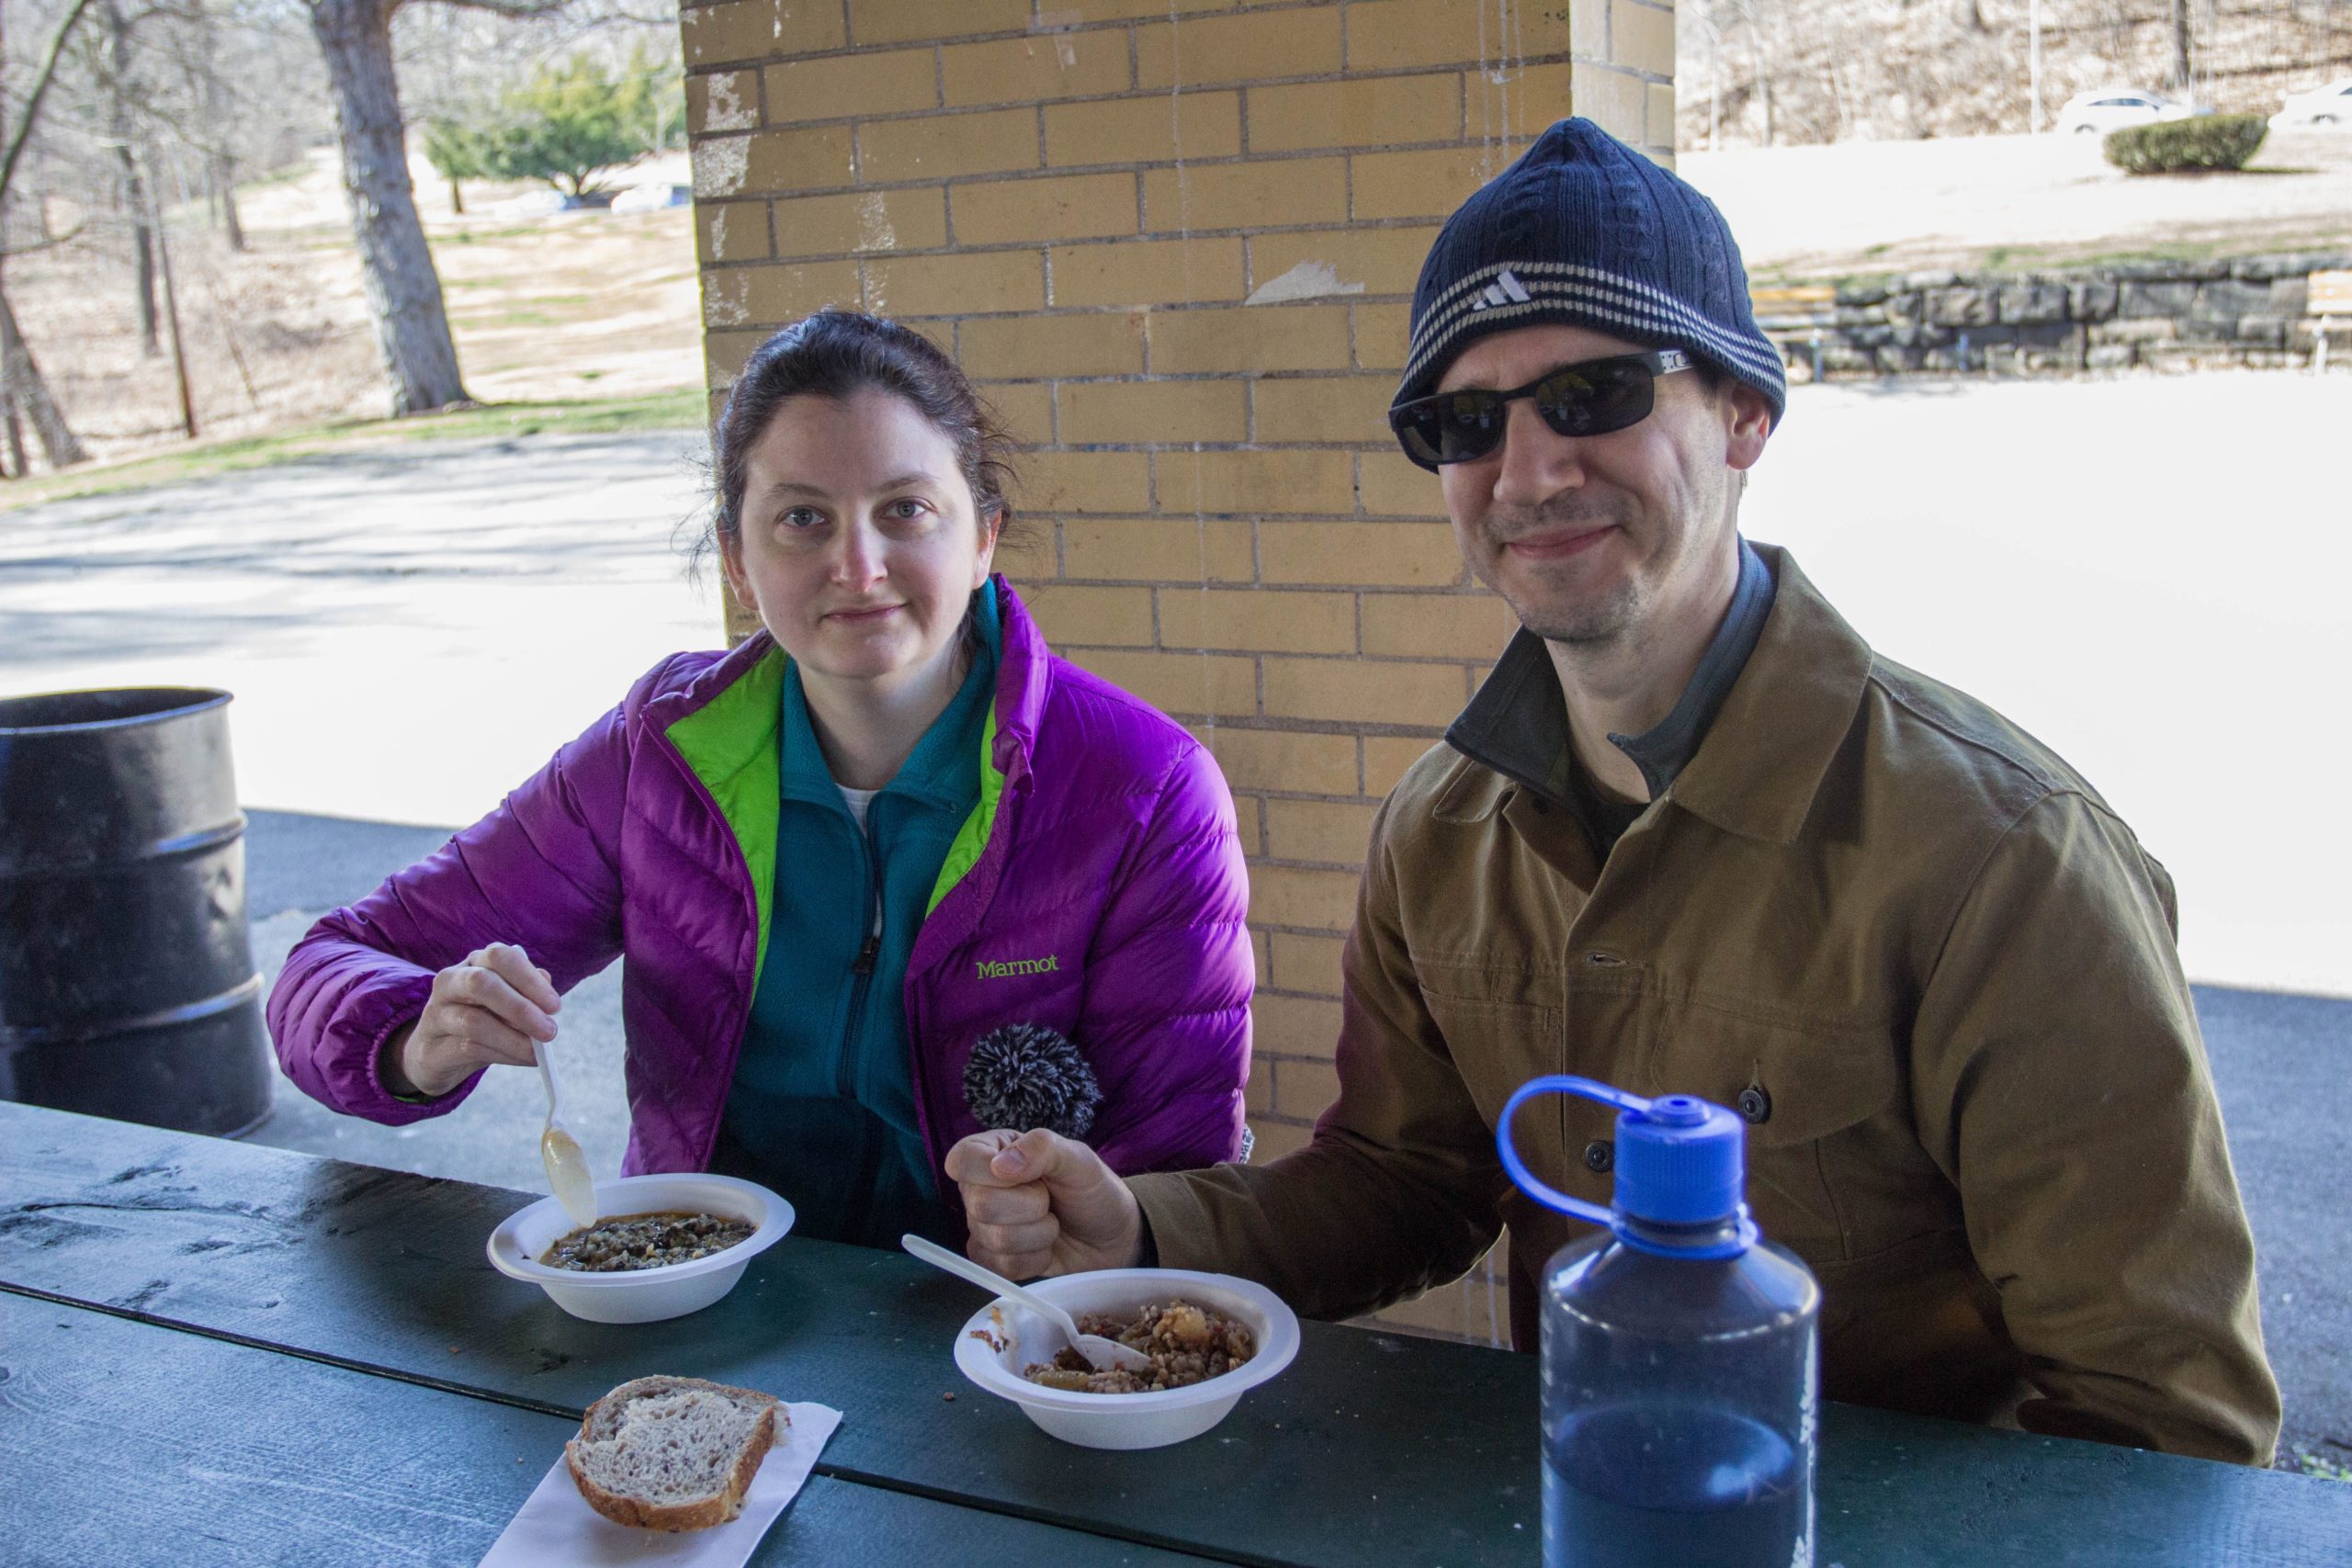 Participants enjoy a warm bowl of soup after a hike